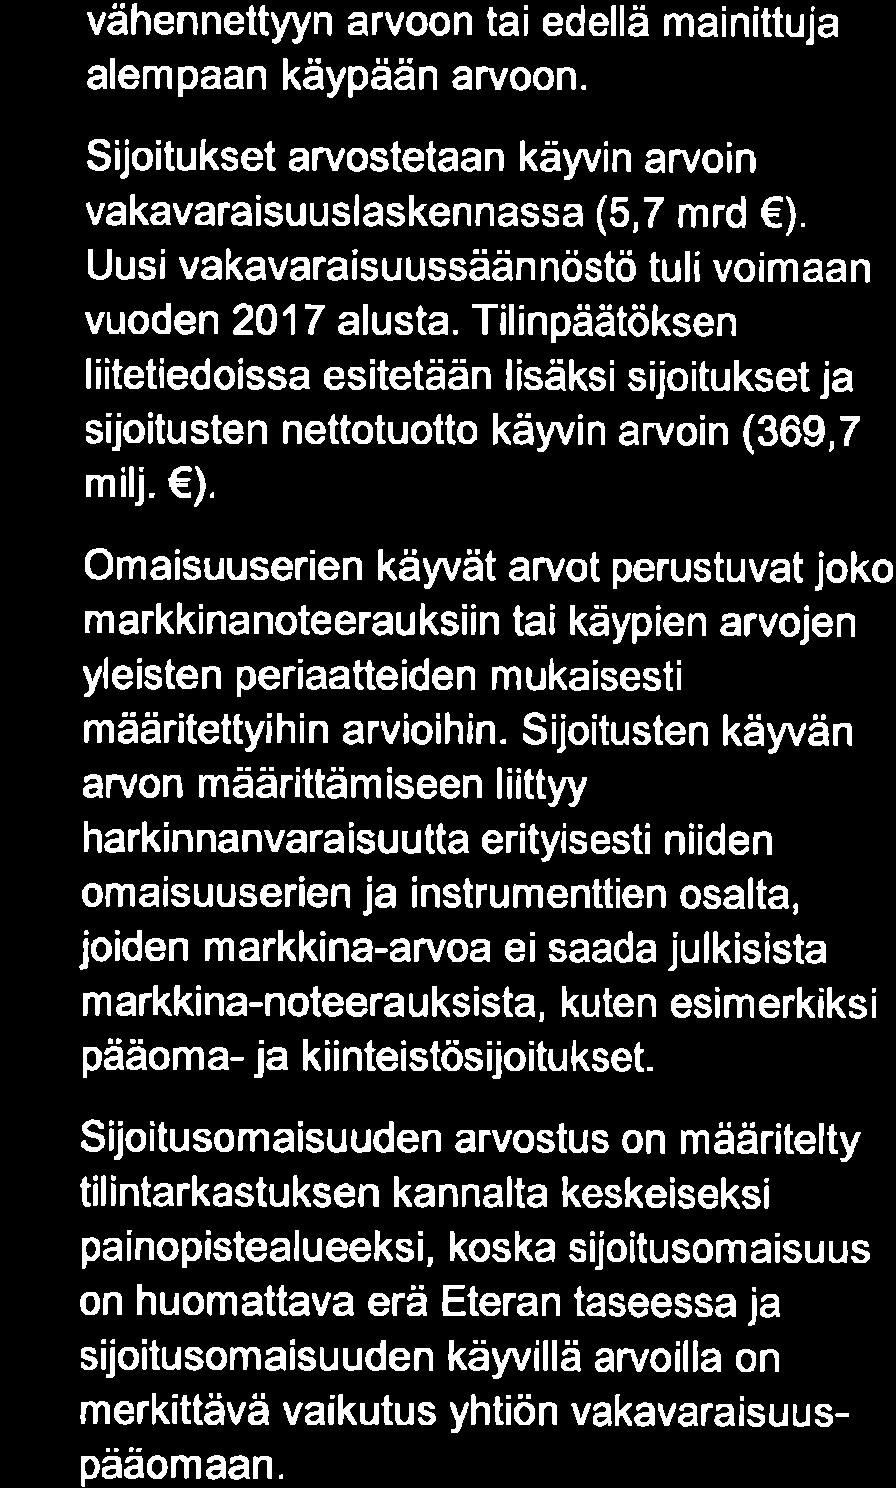 Keskinäinen Elä kevaku utusyhtiö Etera Ti I i nta *astu ske rtom u s Tilikaudelta 1.1.31.1 2.2017 vähennettyyn arvoon tai edellä mainittuja alempaan käypään arvoon.